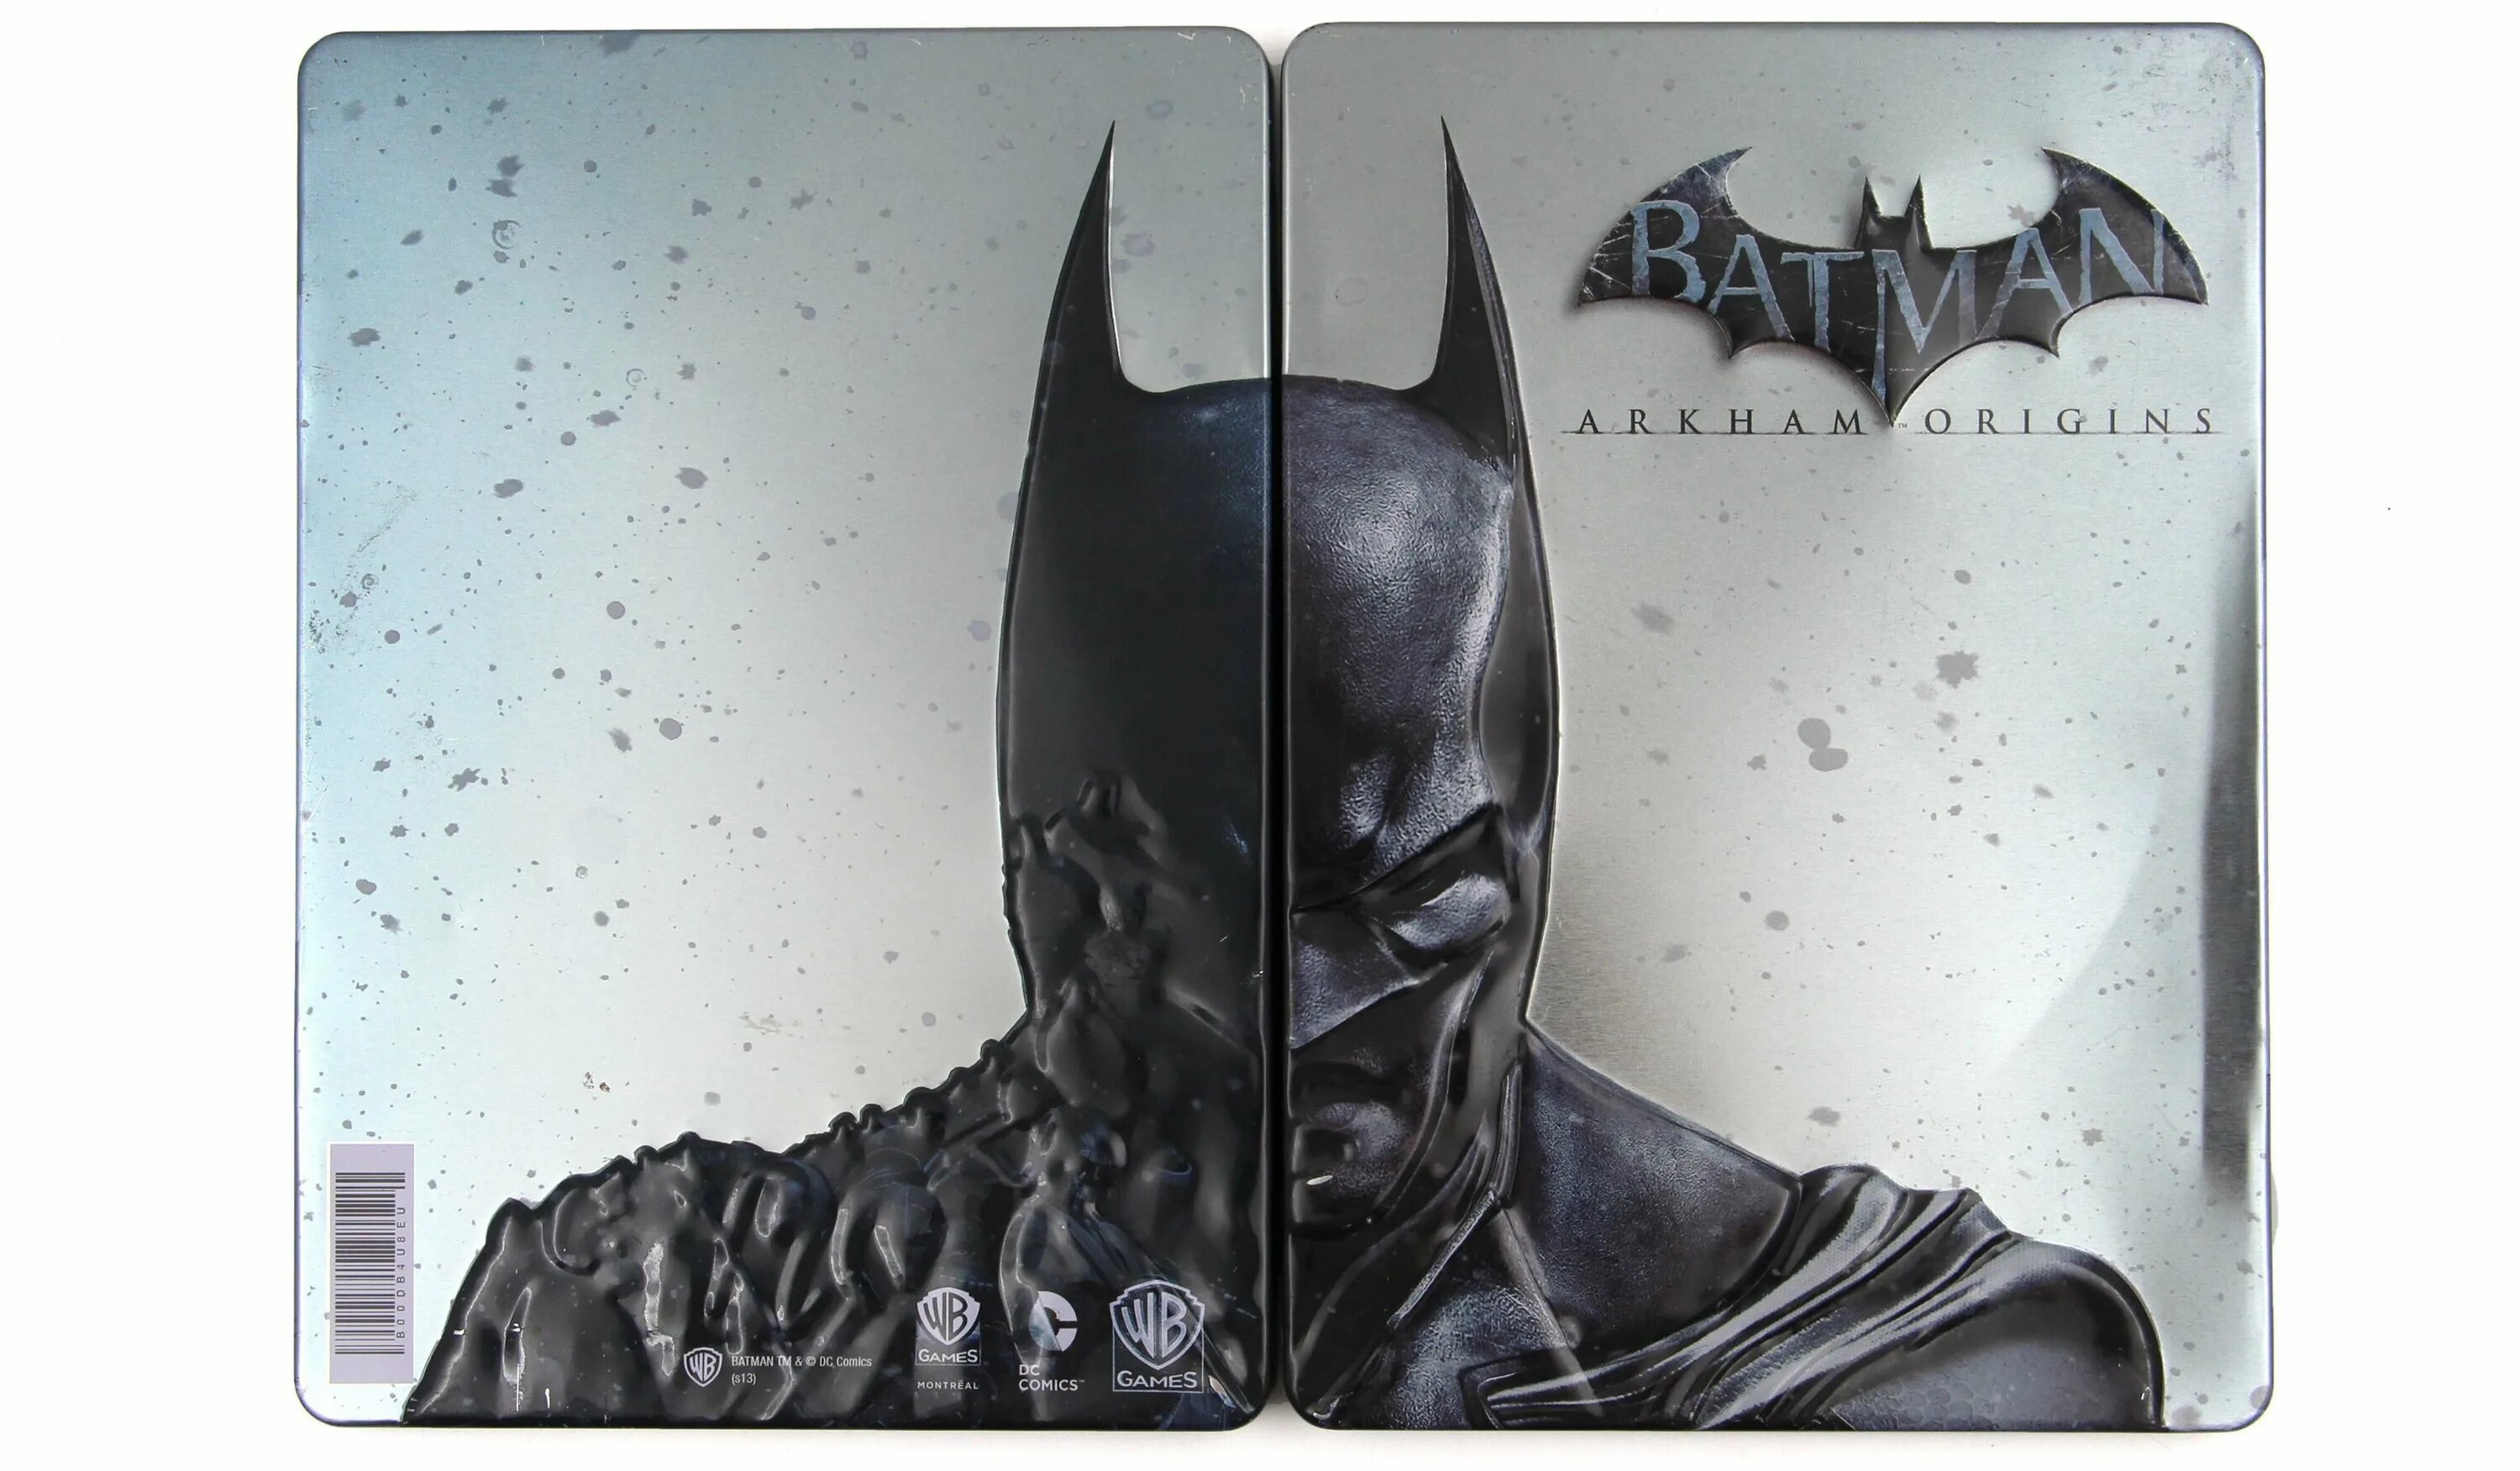 Batman Arkham Origins Steelbook. Batman Arkham Origins Xbox 360. Batman Arkham Origins Xbox Steelbook. Batman Arkham Origins Xbox Steelbook pdf. Batman xbox arkham origins